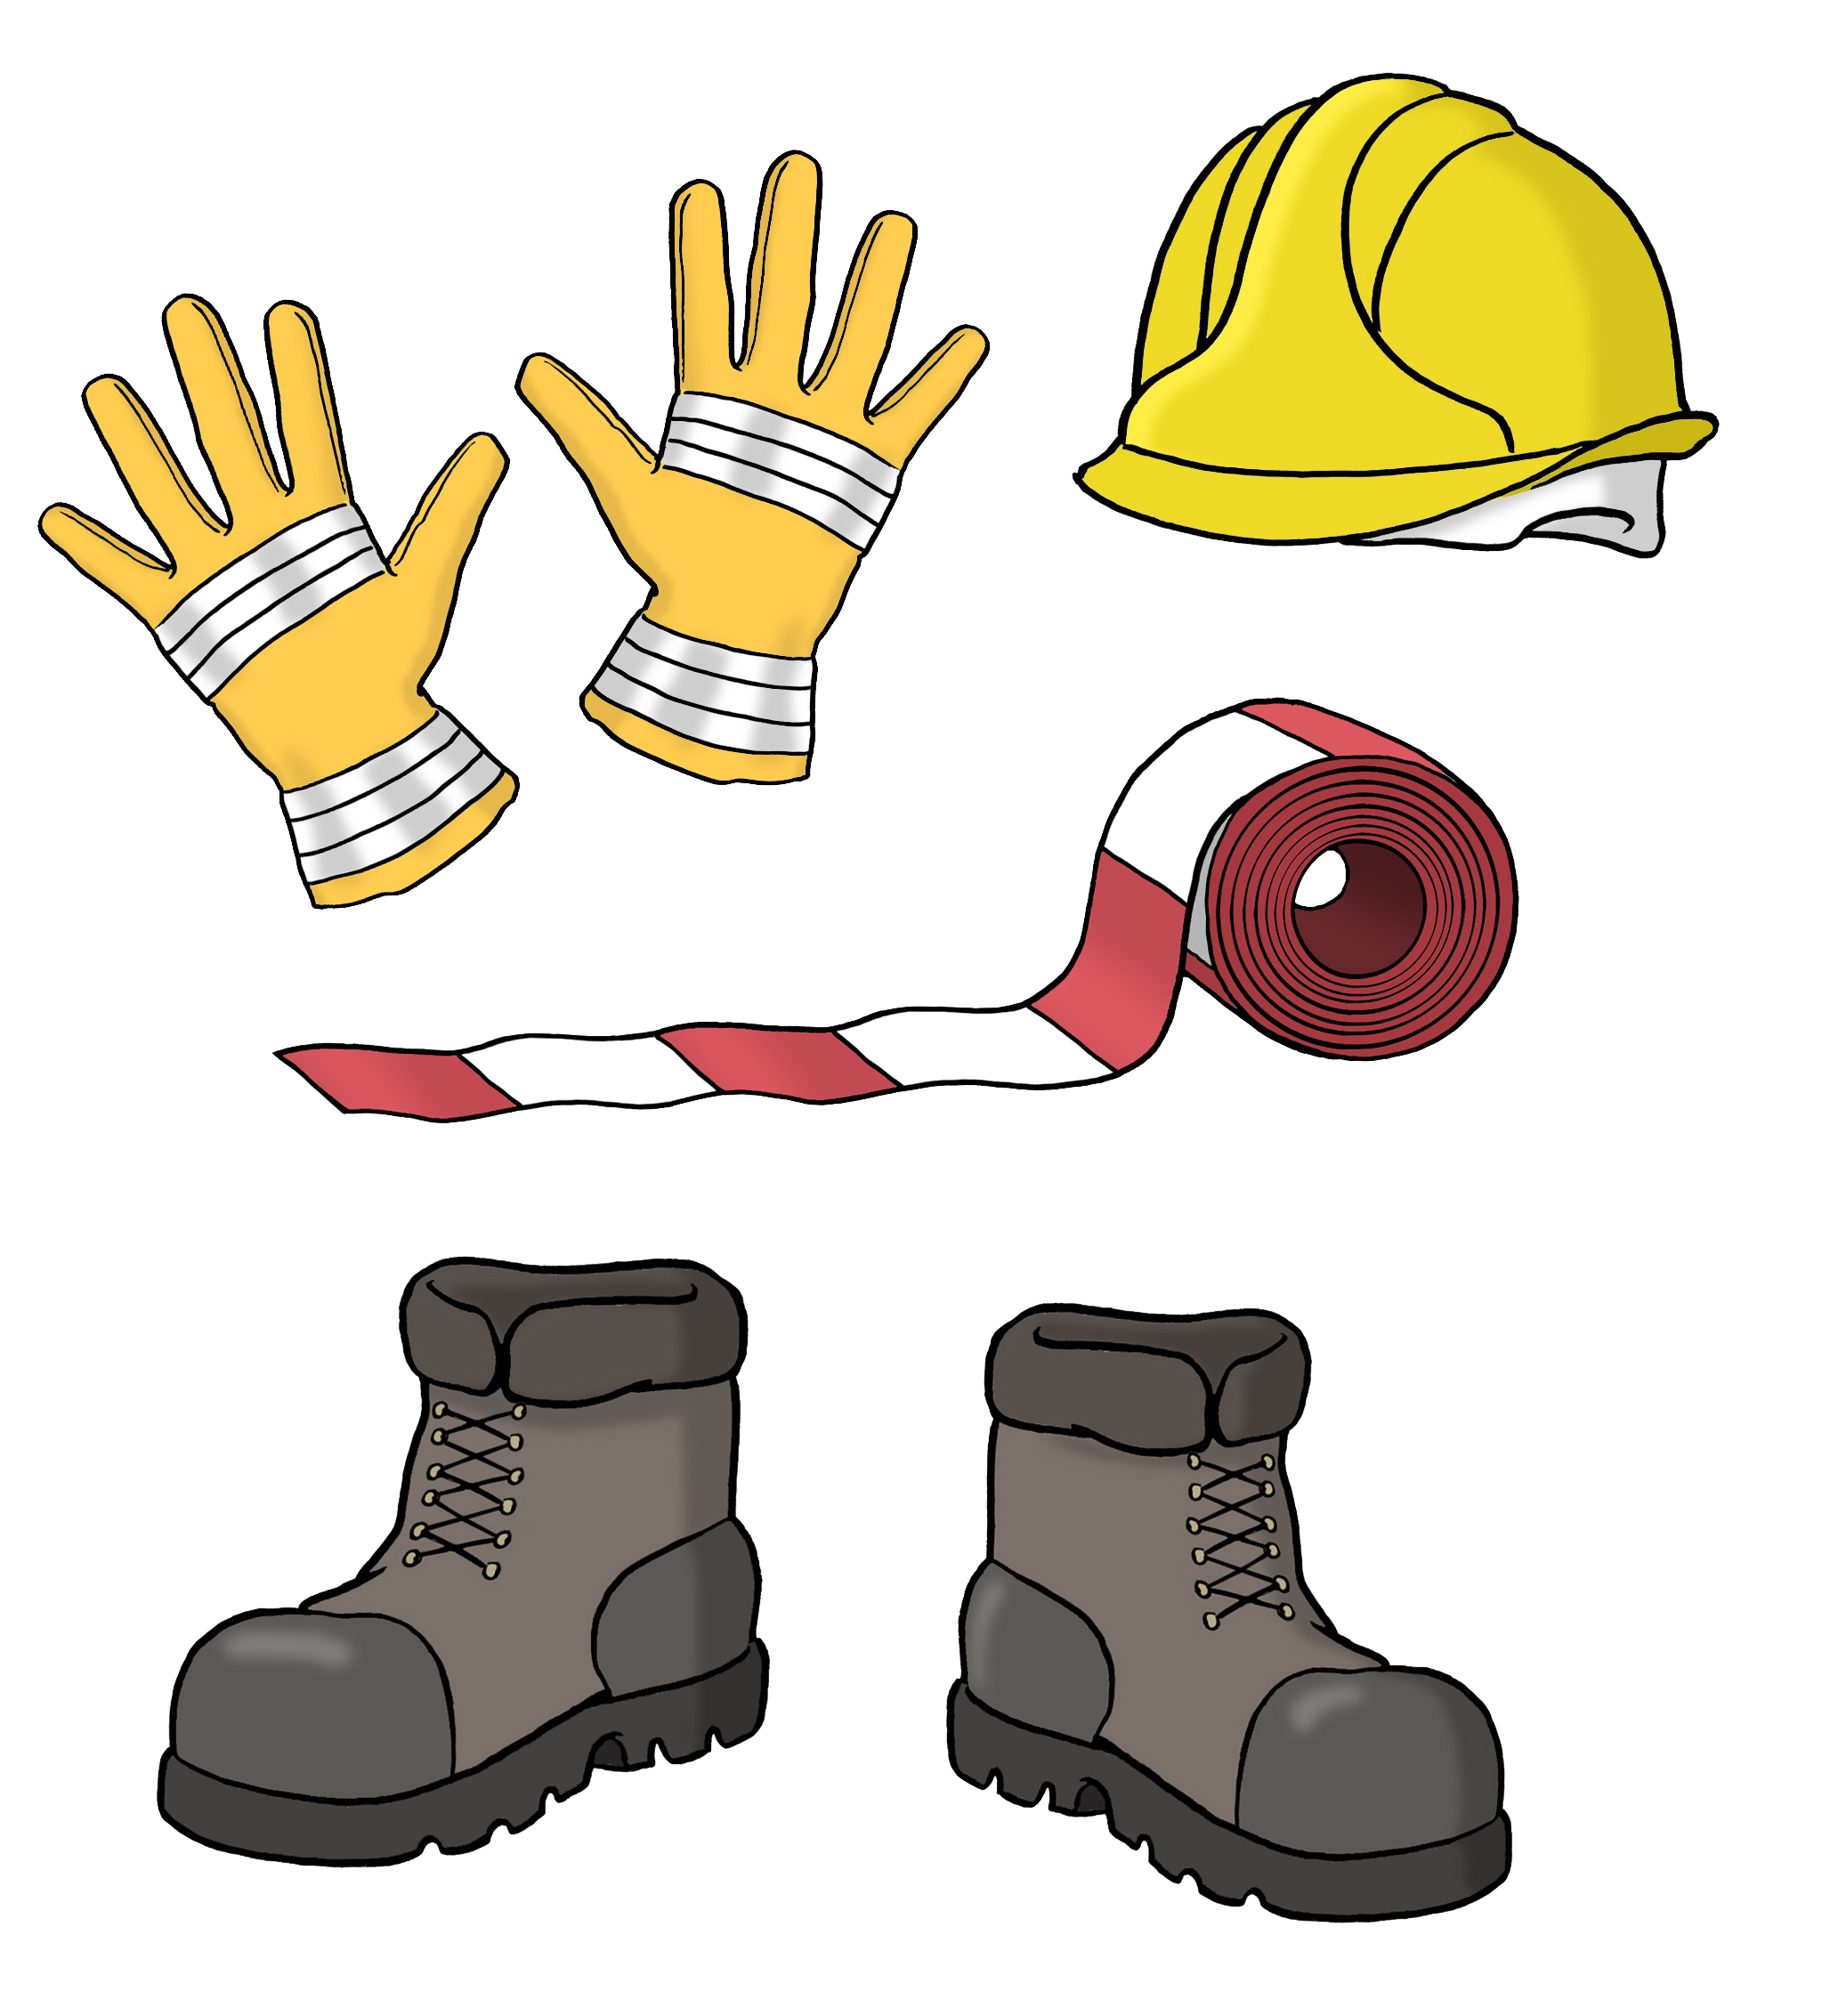 Arbeitsutensilien wie Handschuhe, Helm, Absperrband und Arbeitsschuhe. 